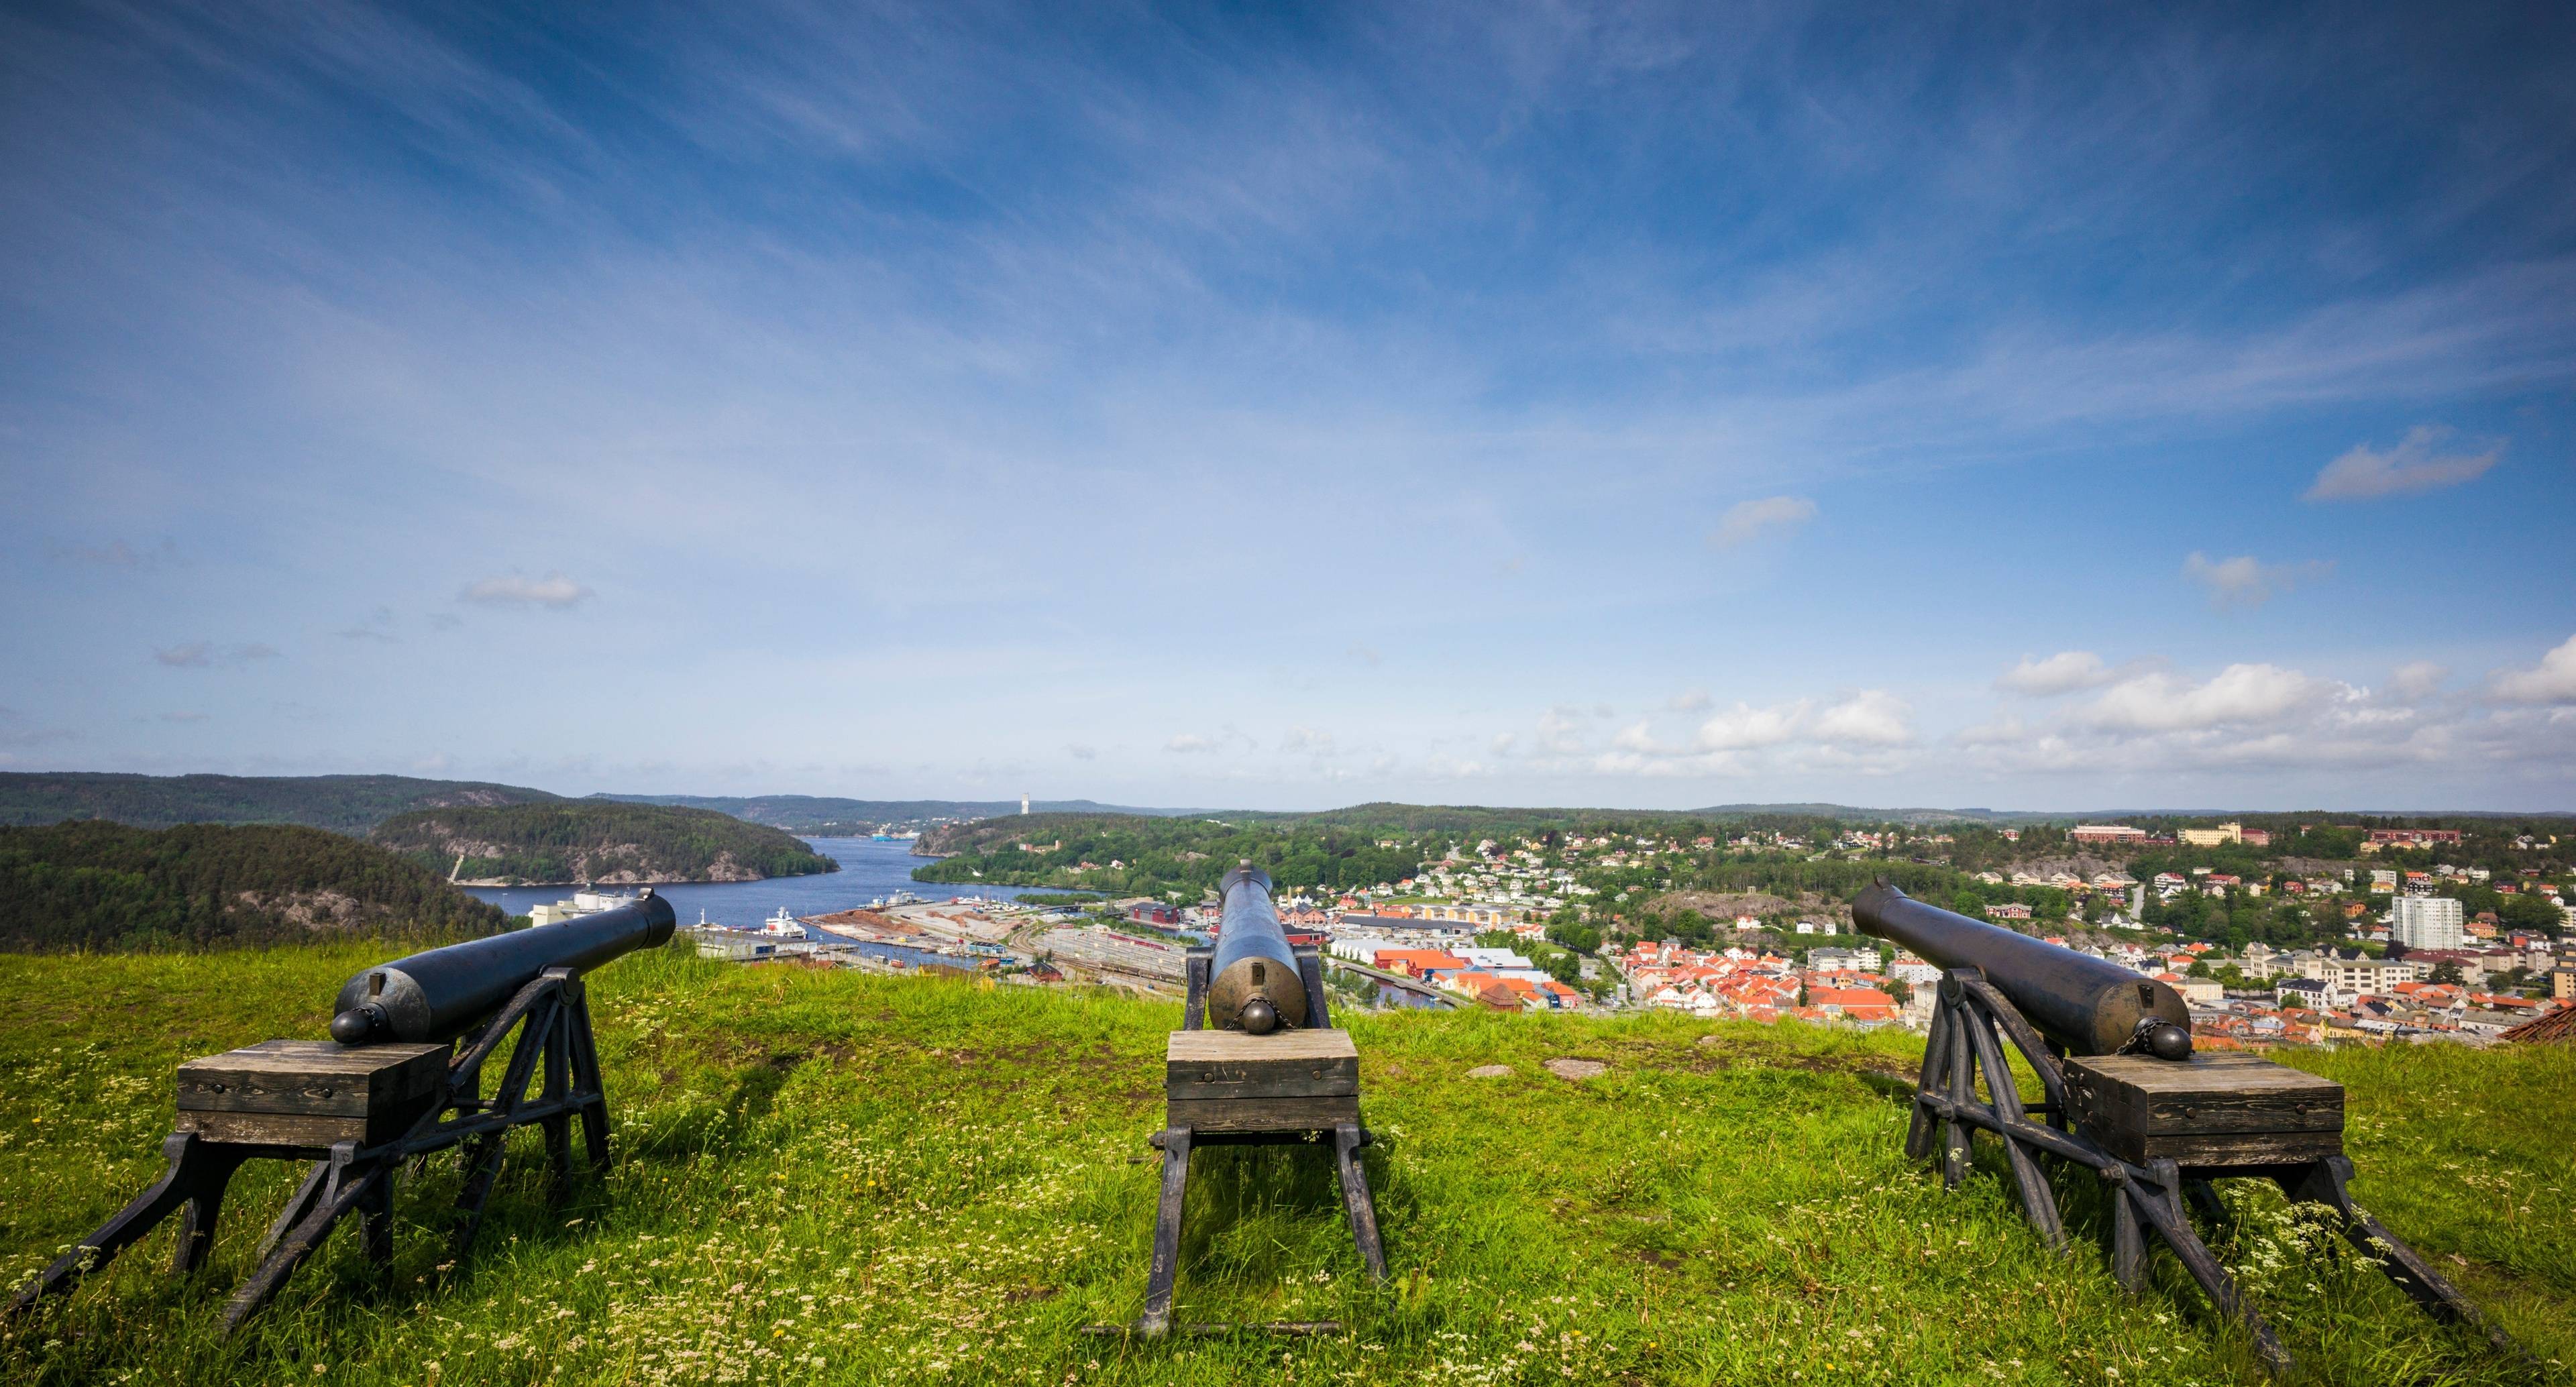 Viaje lleno de diversión con lugares históricos y cultura local noruega